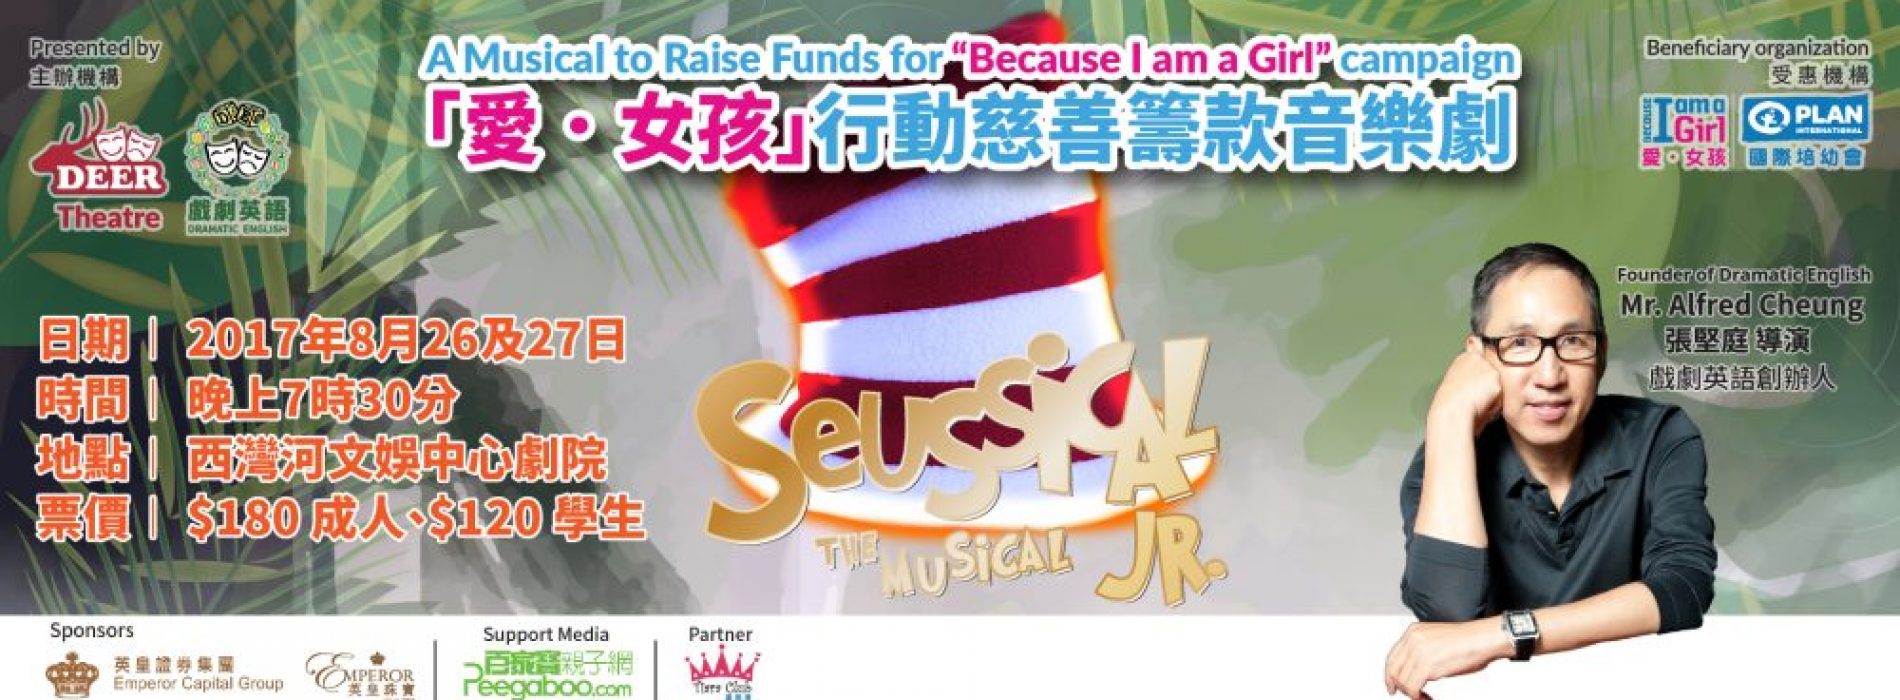 送總值$2,880 Seussical Jr.音樂劇門票X「愛．女孩」行動慈善籌款